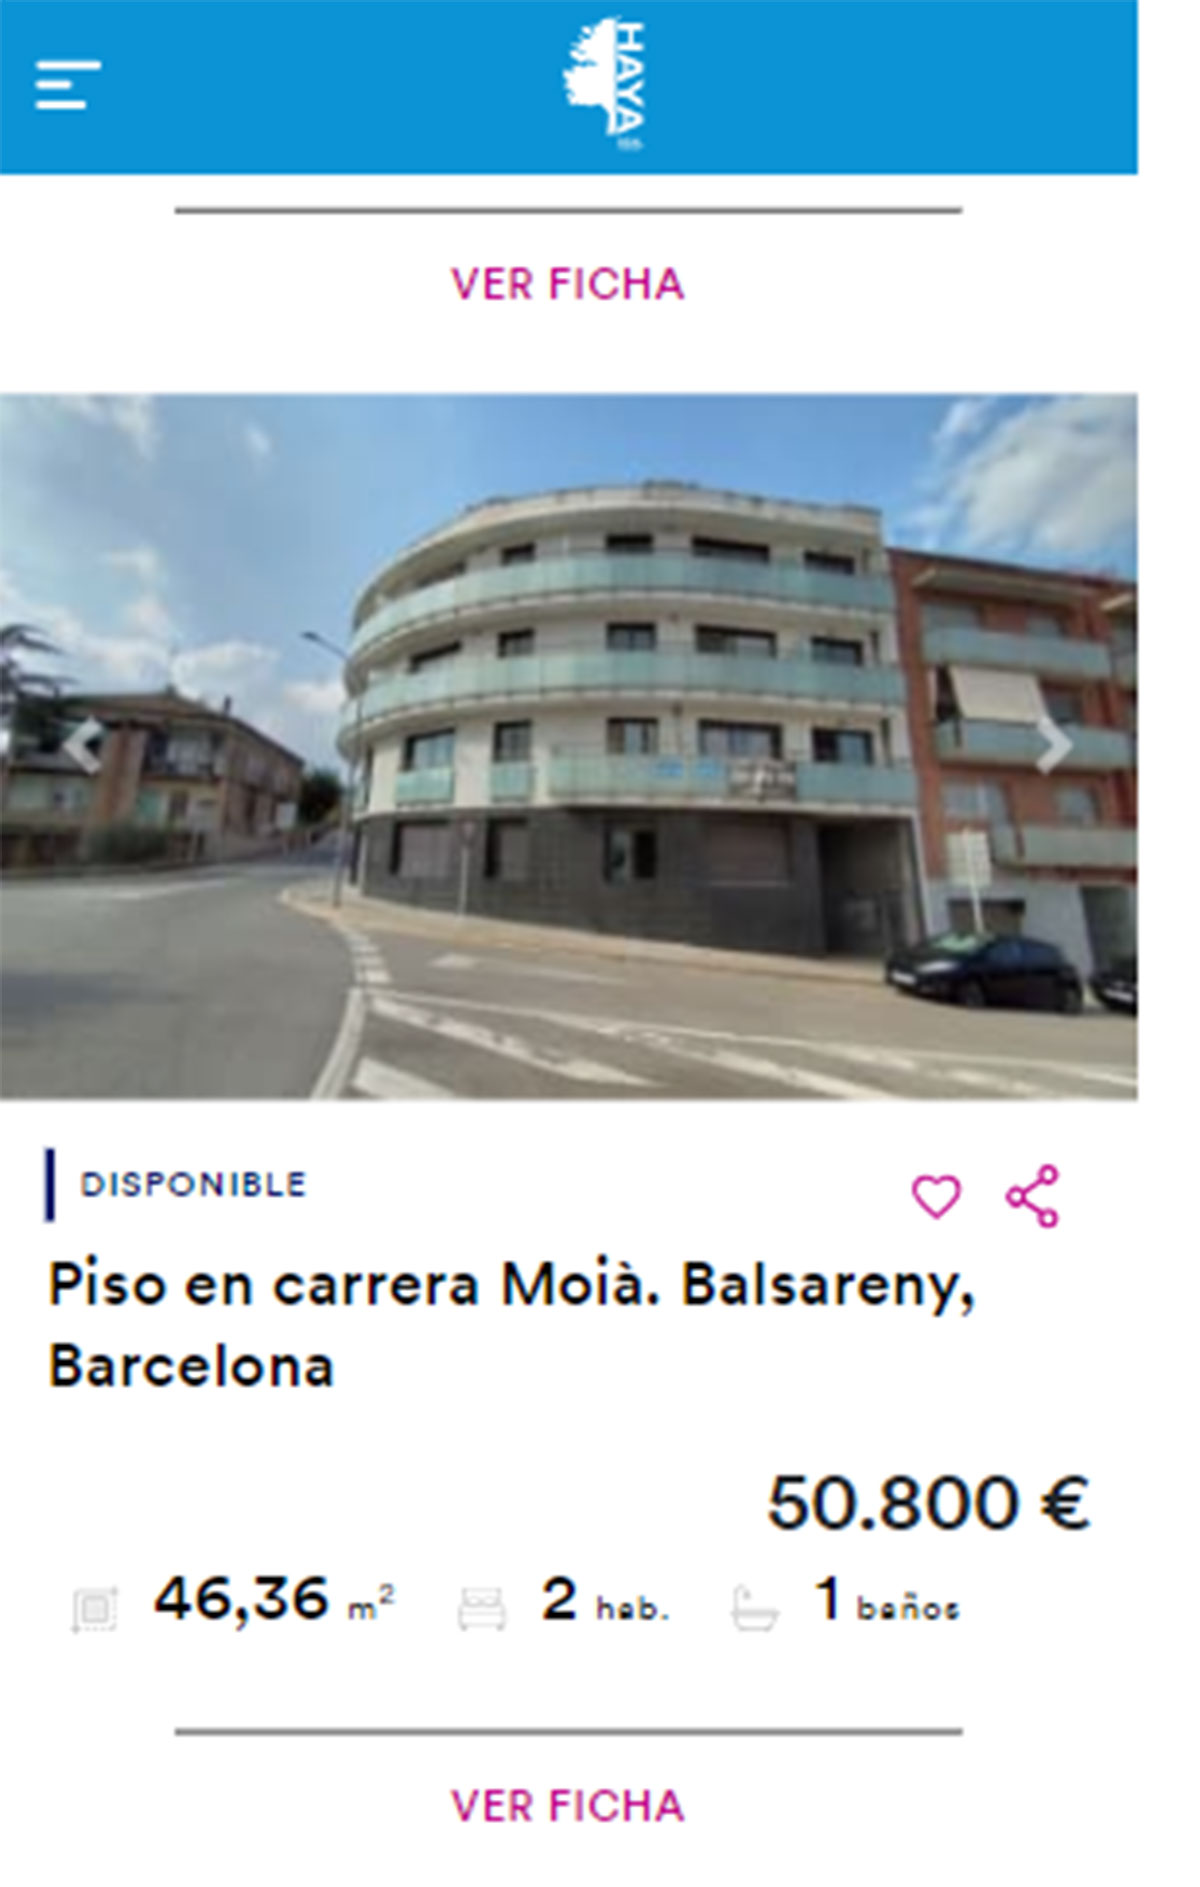 Piso en Barcelona por 50.800 euros